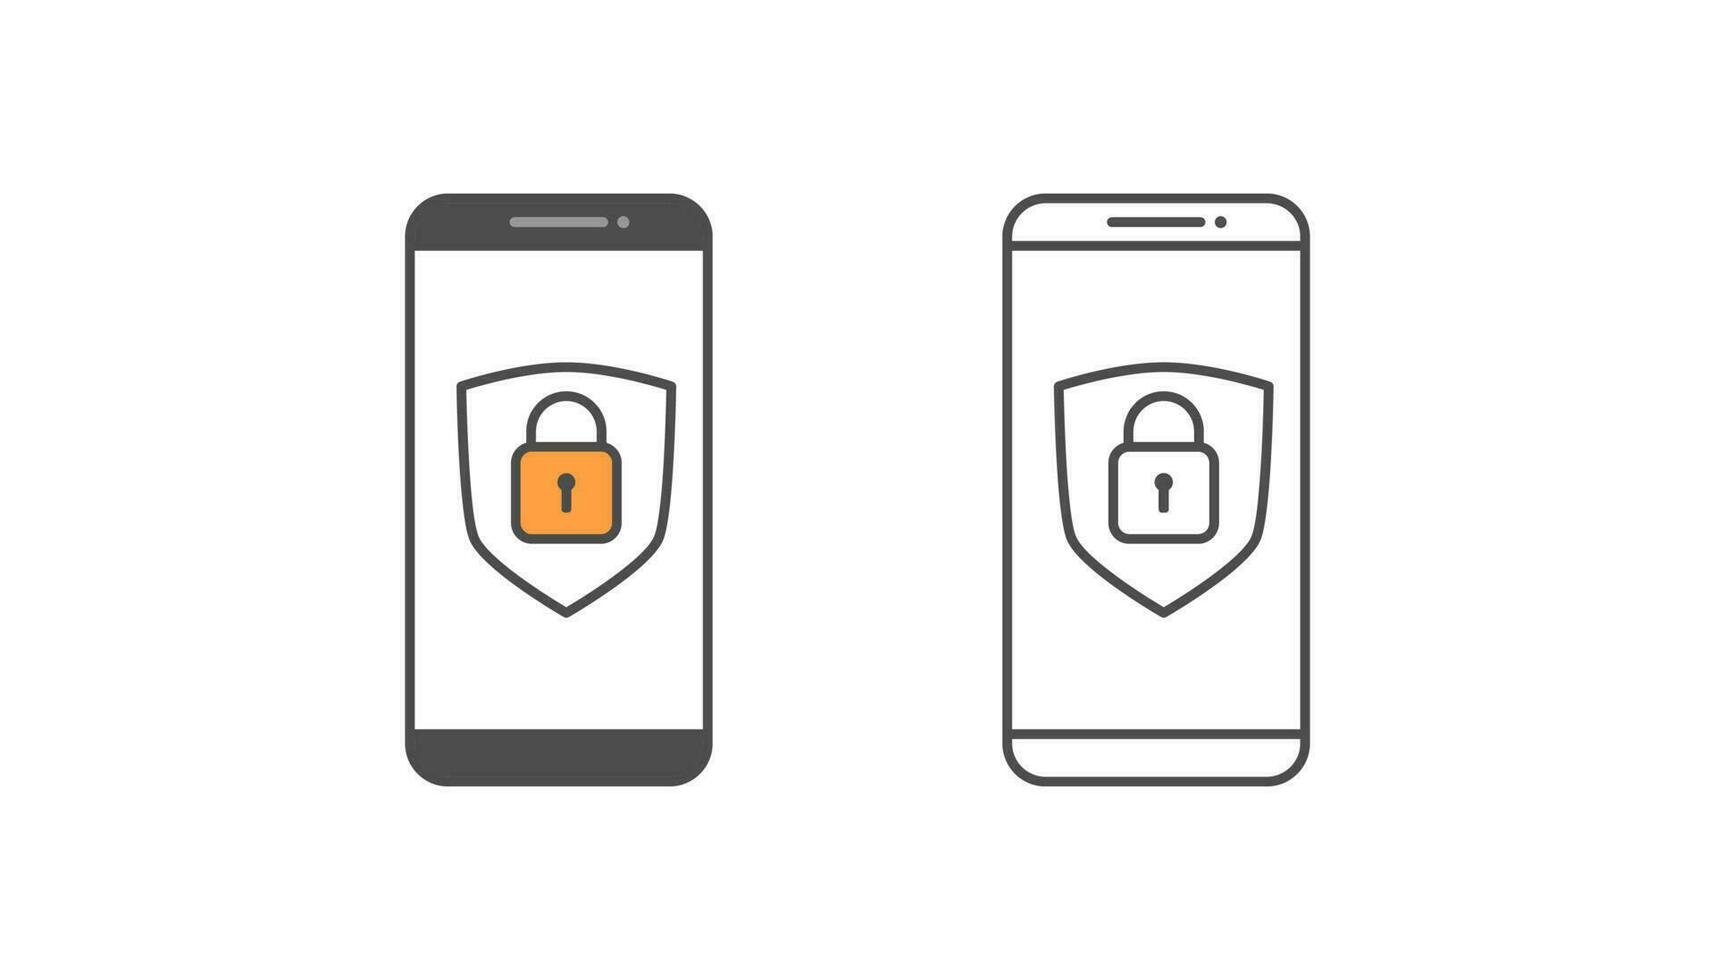 smartphone e lucchetto, disegno vettoriale dei dati di sicurezza dello smartphone